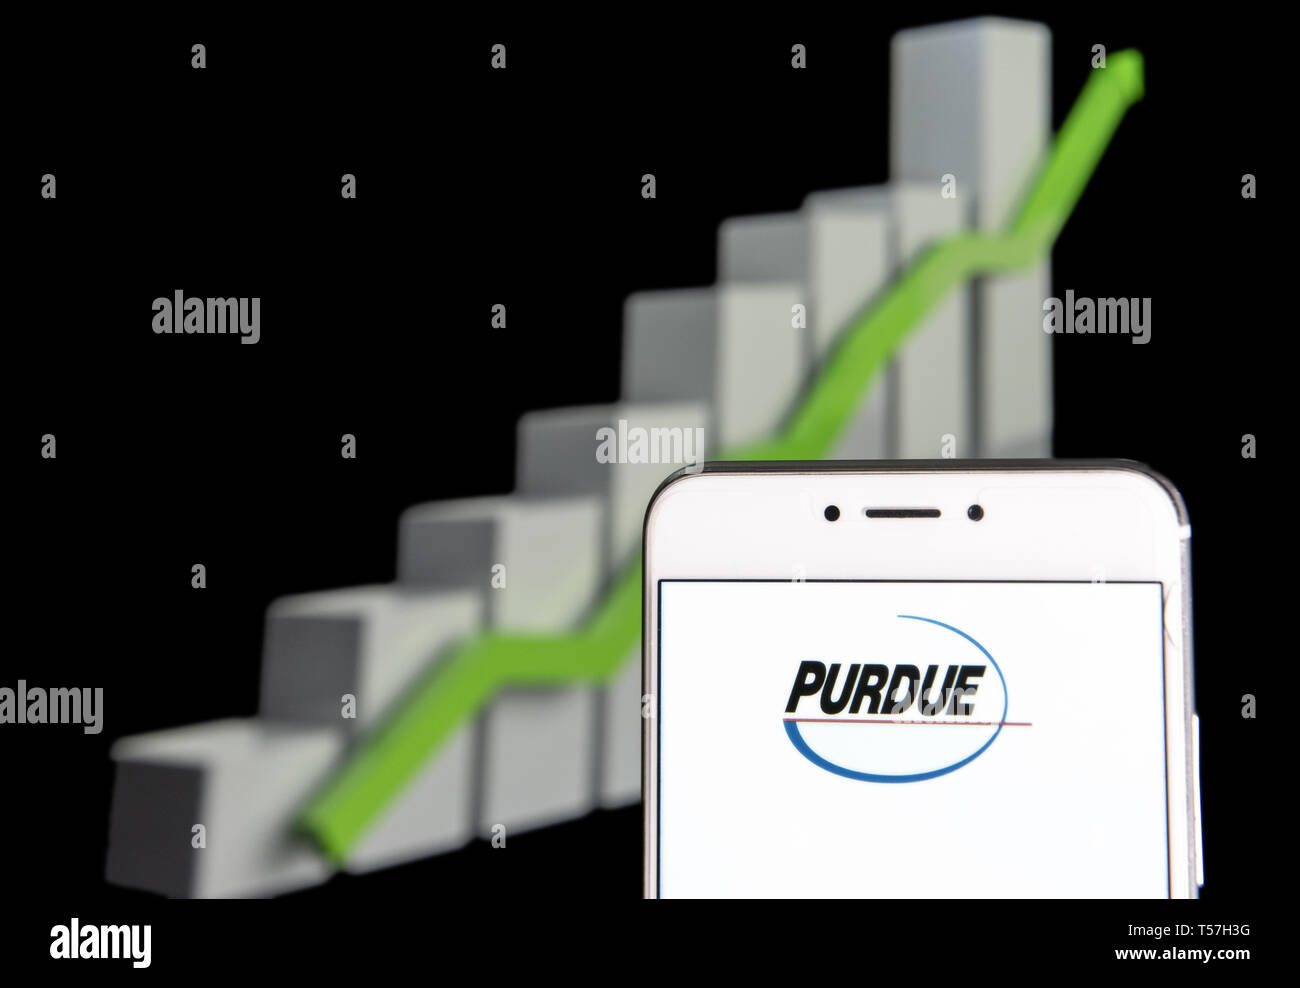 Purdue Pharma Stock Chart